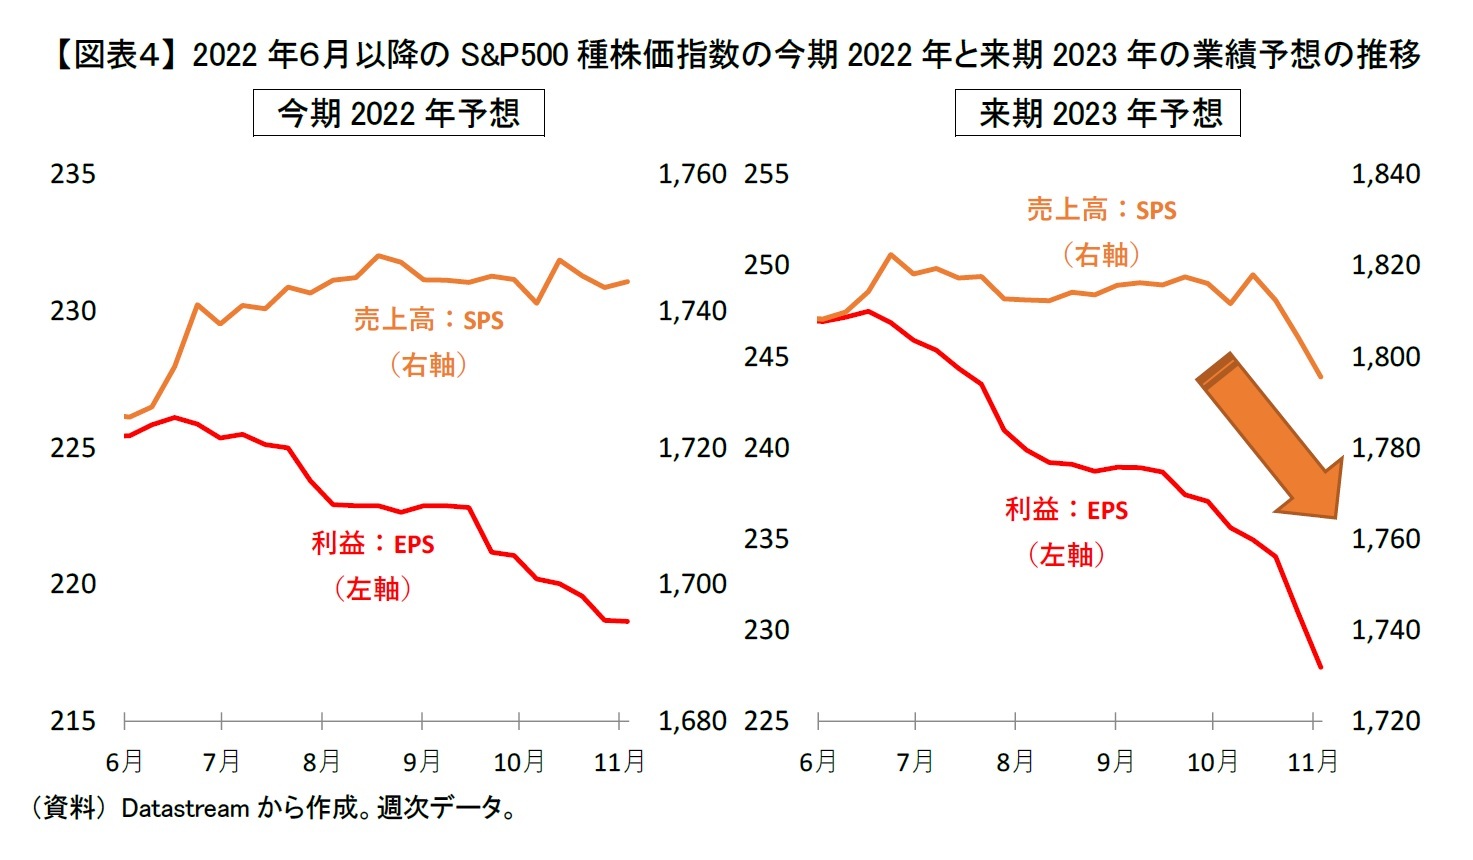 【図表４】 2022年６月以降のS&P500種株価指数の今期2022年と来期2023年の業績予想の推移